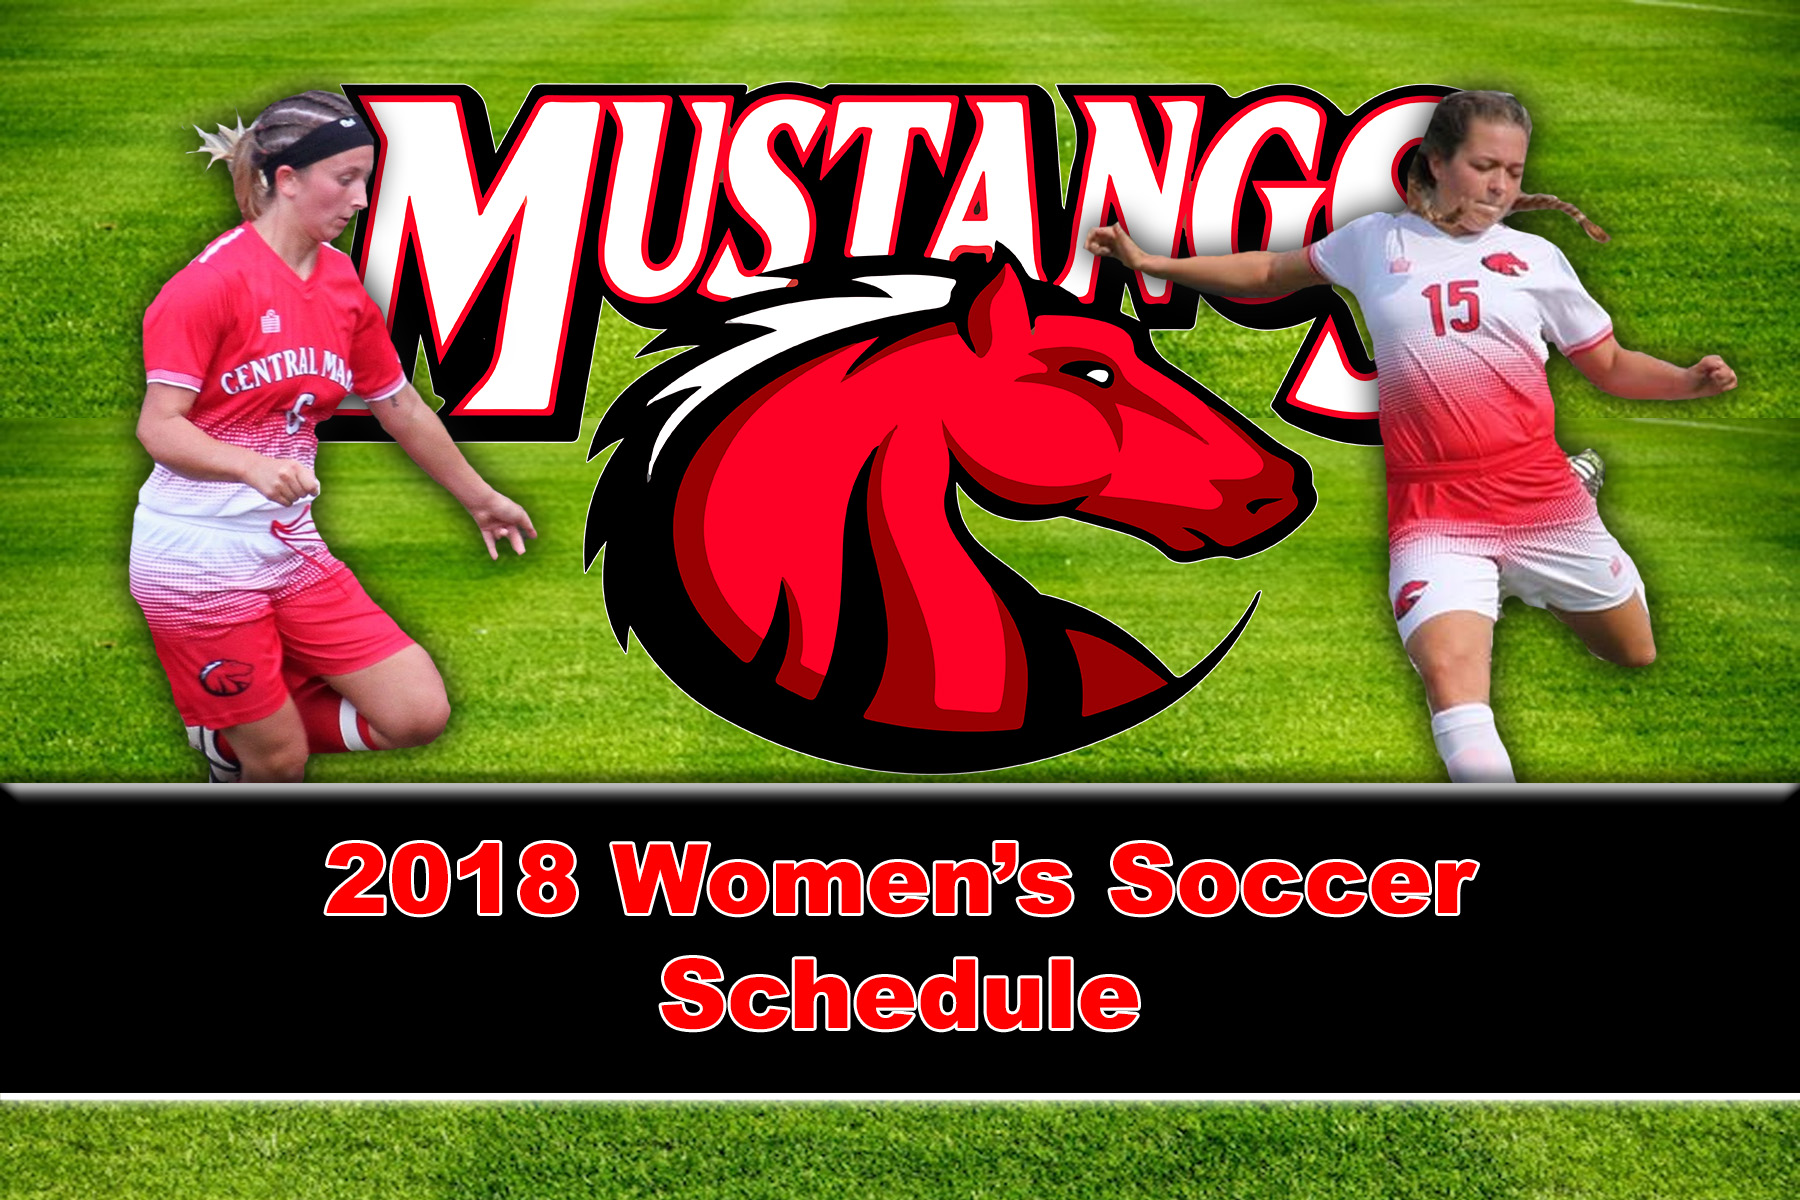 Women's Soccer 2018 Schedule released